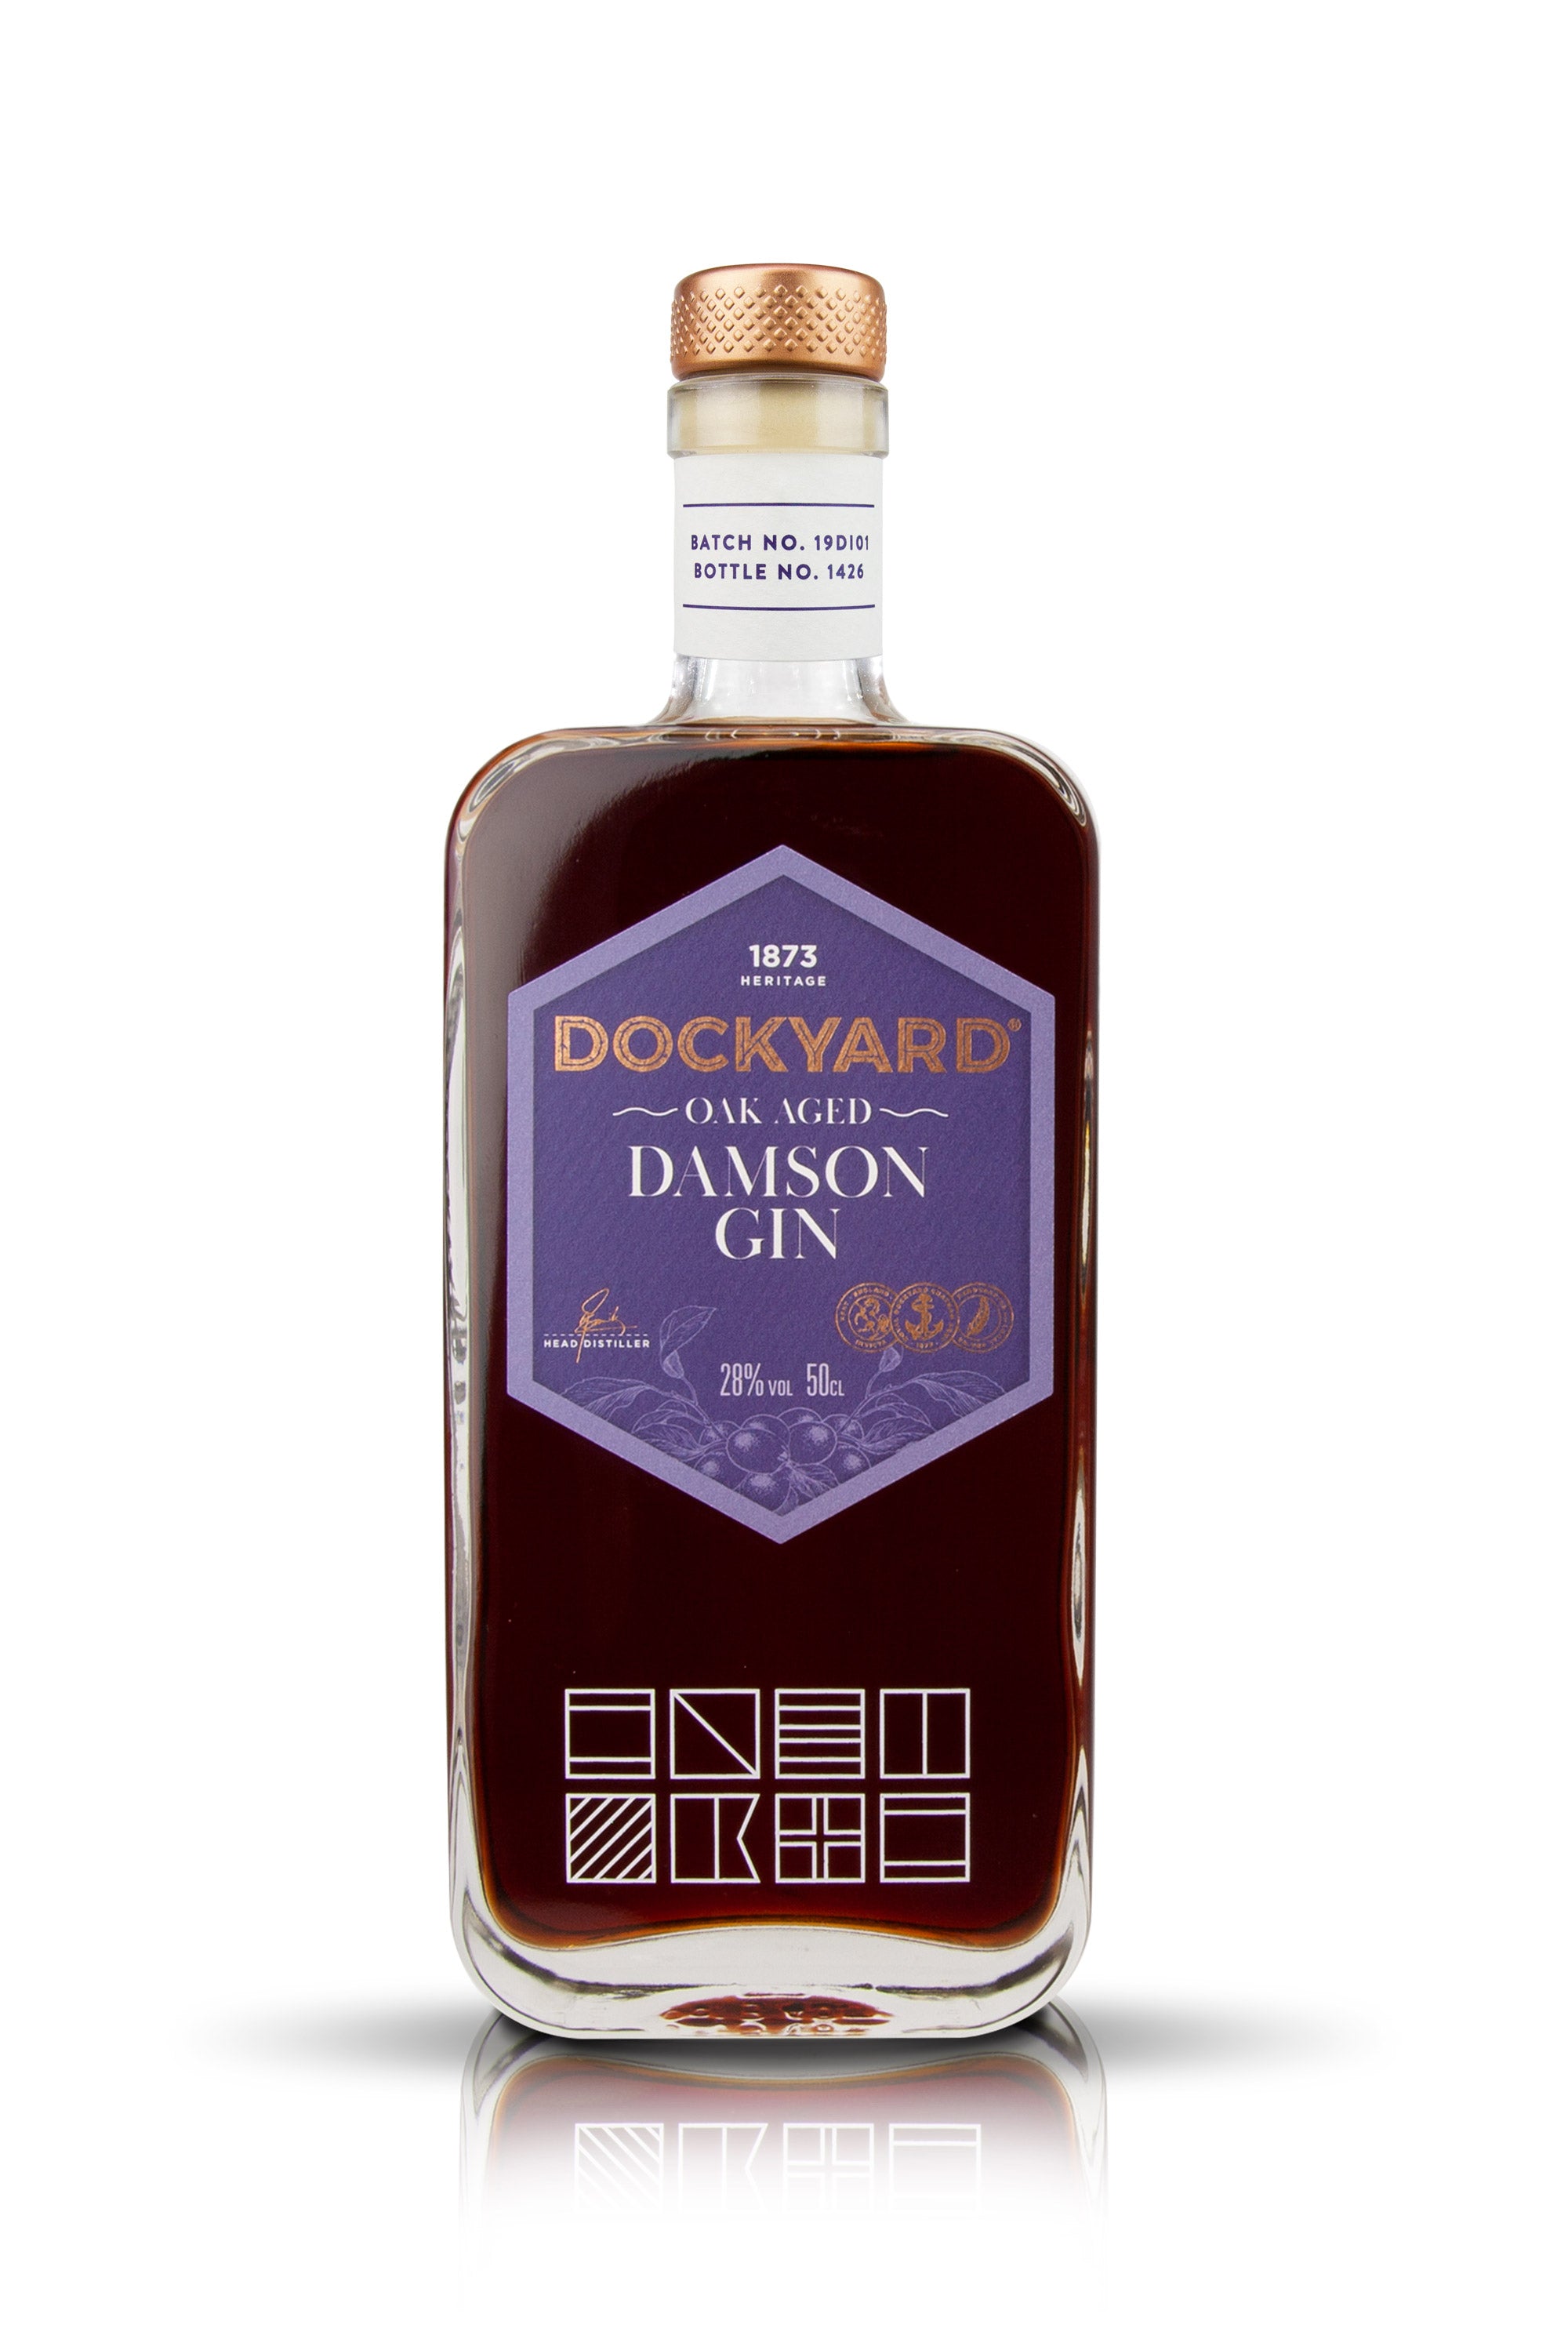 Dockyard Damson Gin